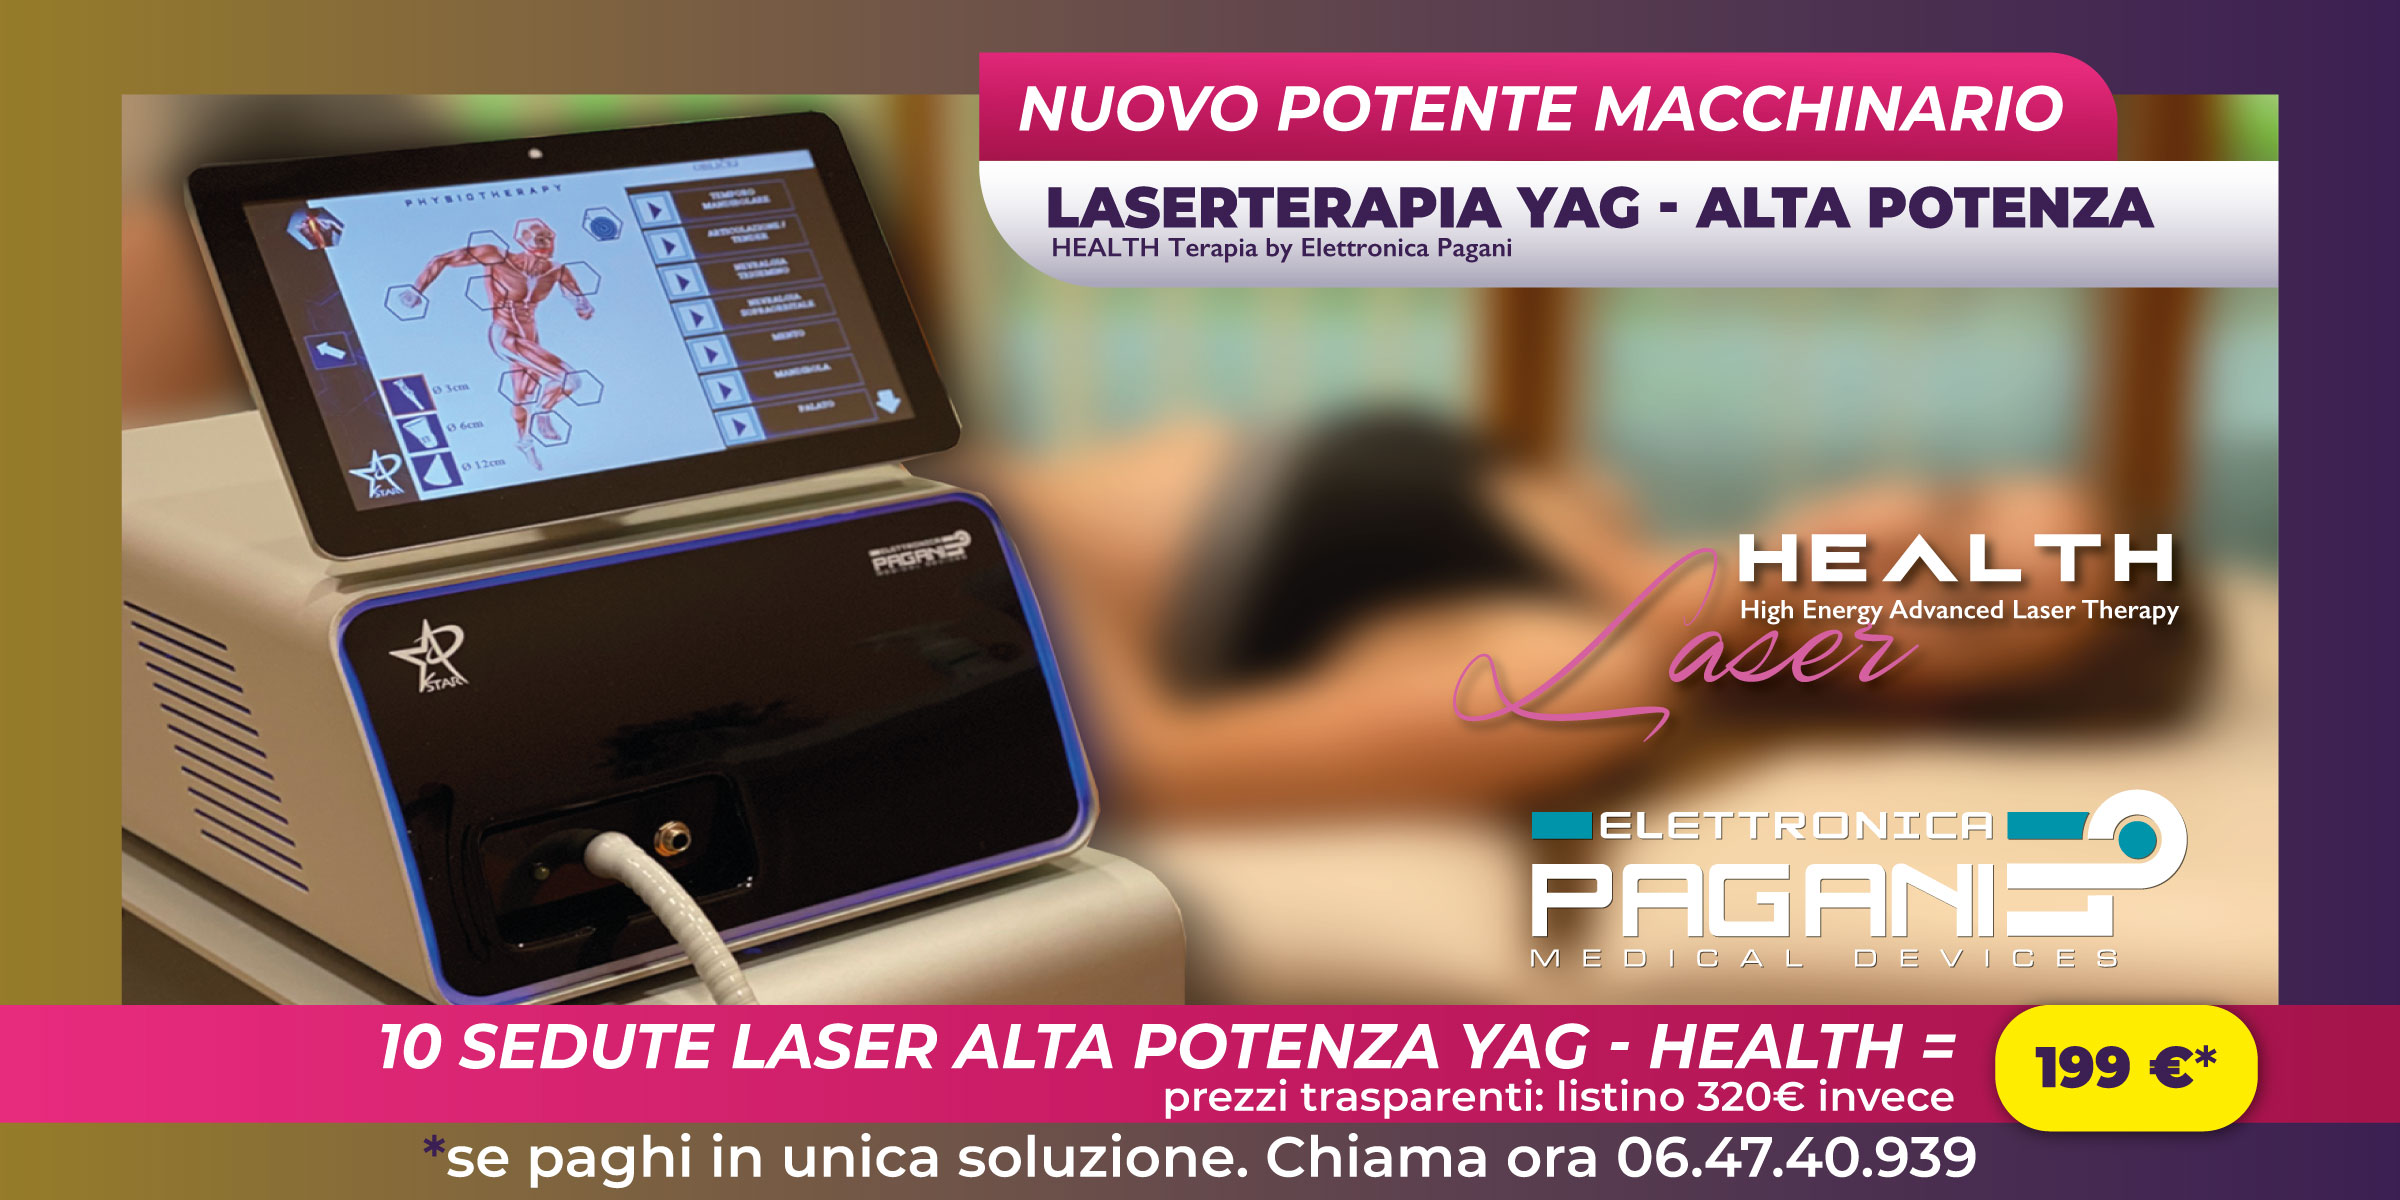 Il centro fisioterapico Studio Medico Lazio ai Parioli ti offre una promo imperdibile: 10 sedute di Laser YAG ad alta potenza a 199 €!